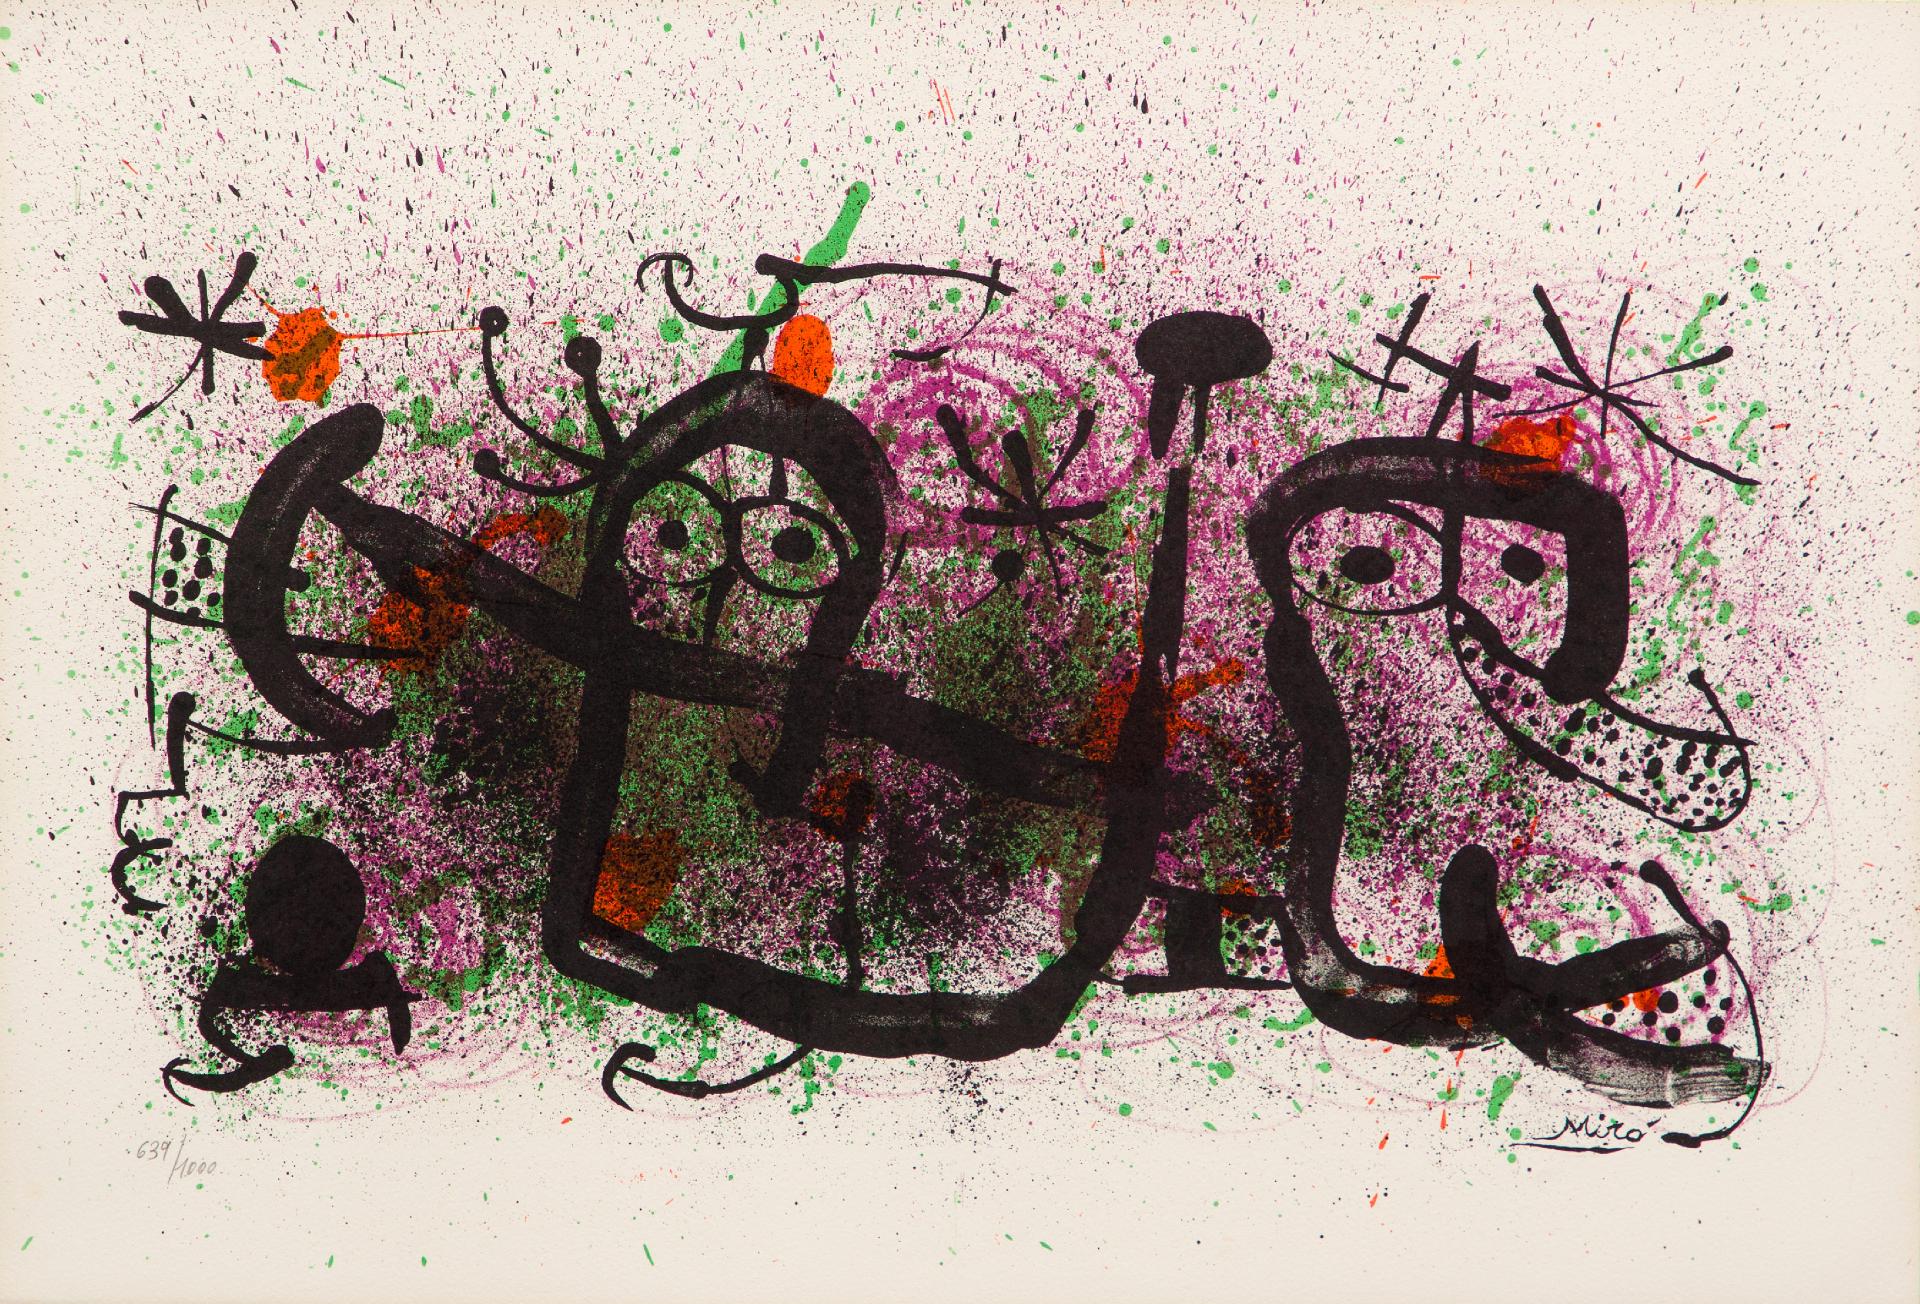 Joan Miró (1893-1983) - Ma de proverbis, 1970